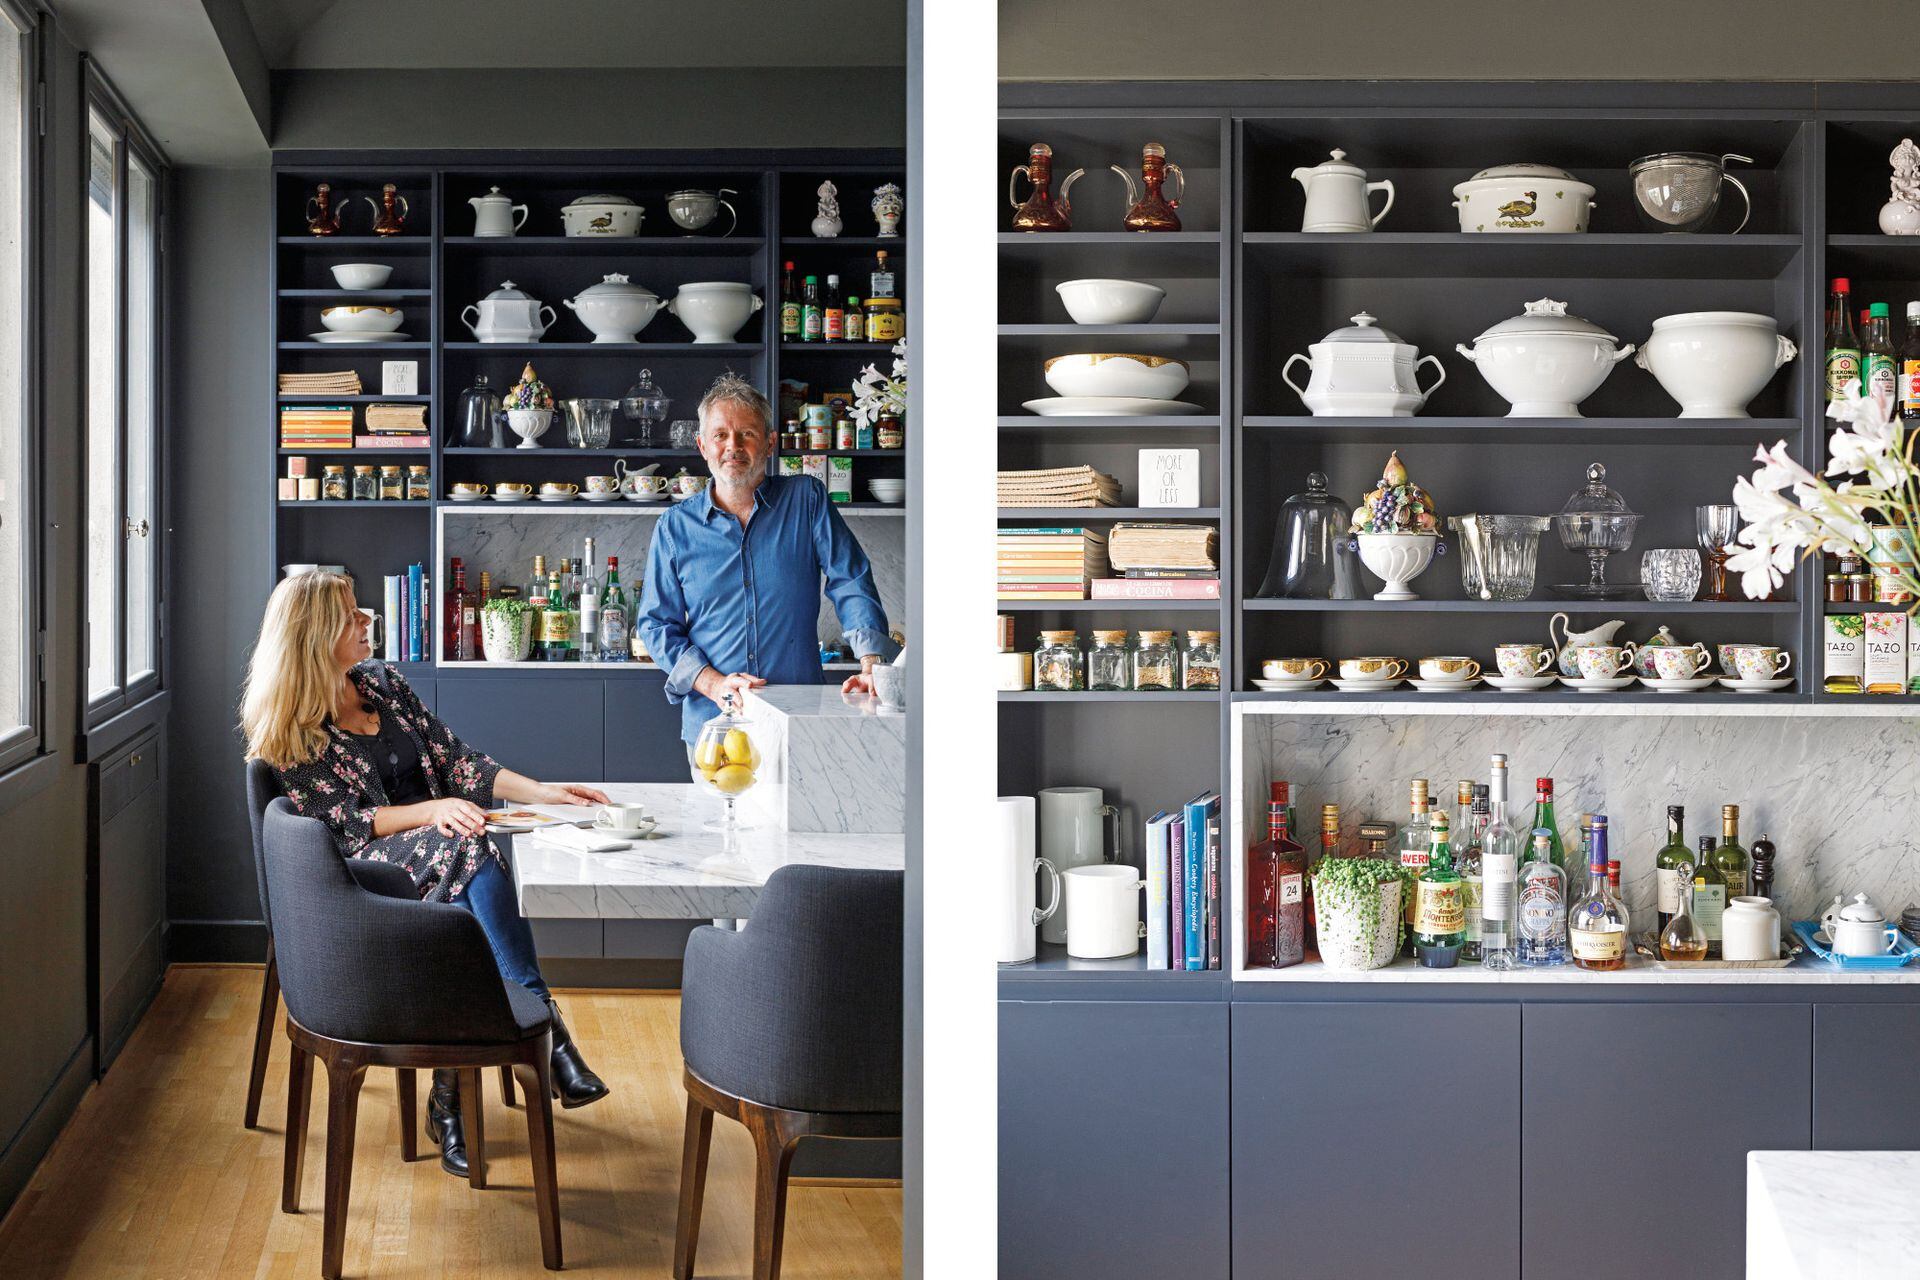 Jorge Cermesoni y Mariel, su mujer, retratados en la cocina, el espacio donde él despliega su gusto por preparar y recibir.